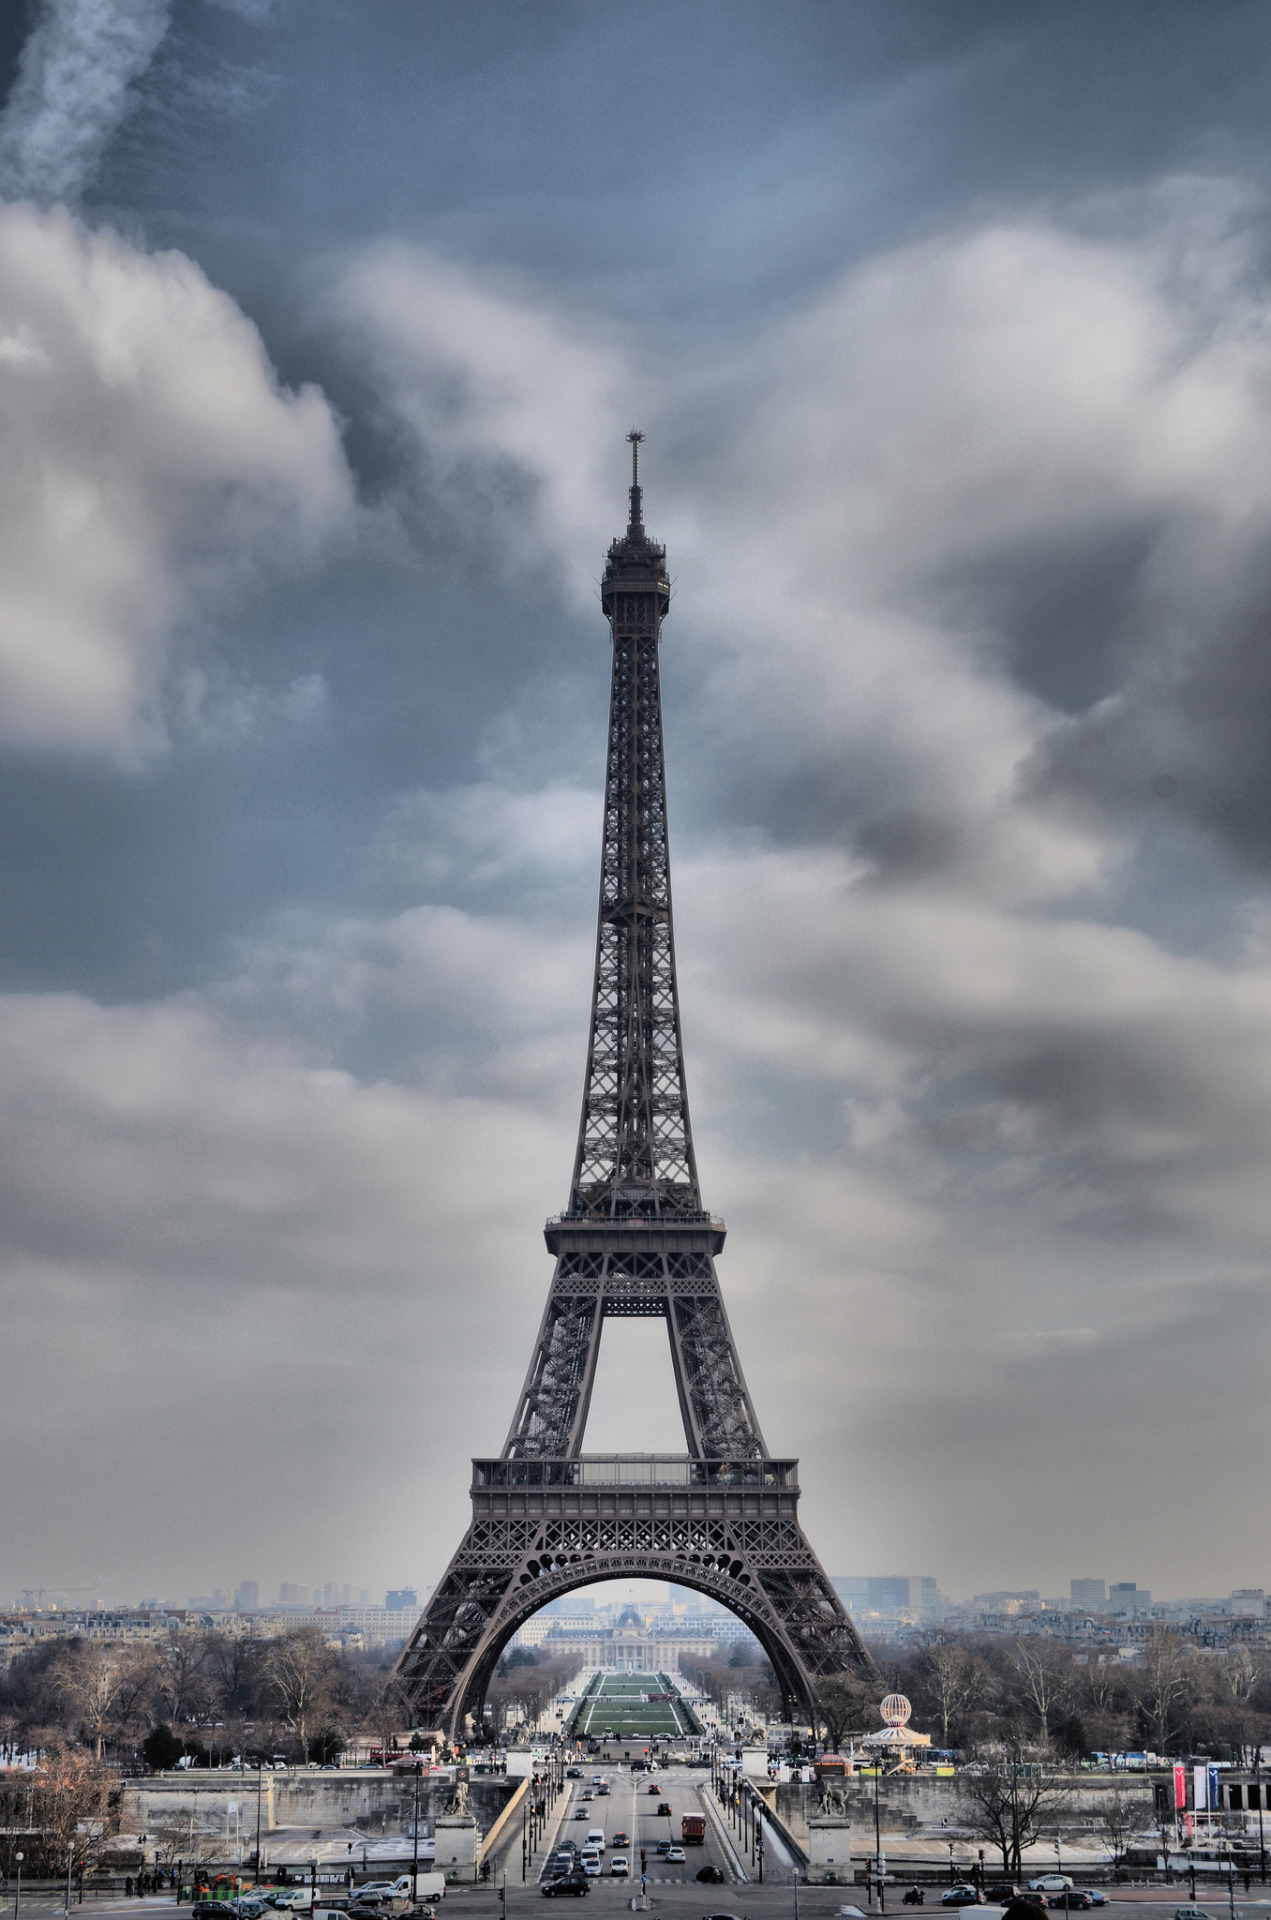 Amazing Places - Eiffel Tower - Paris - France (by jean-marc)